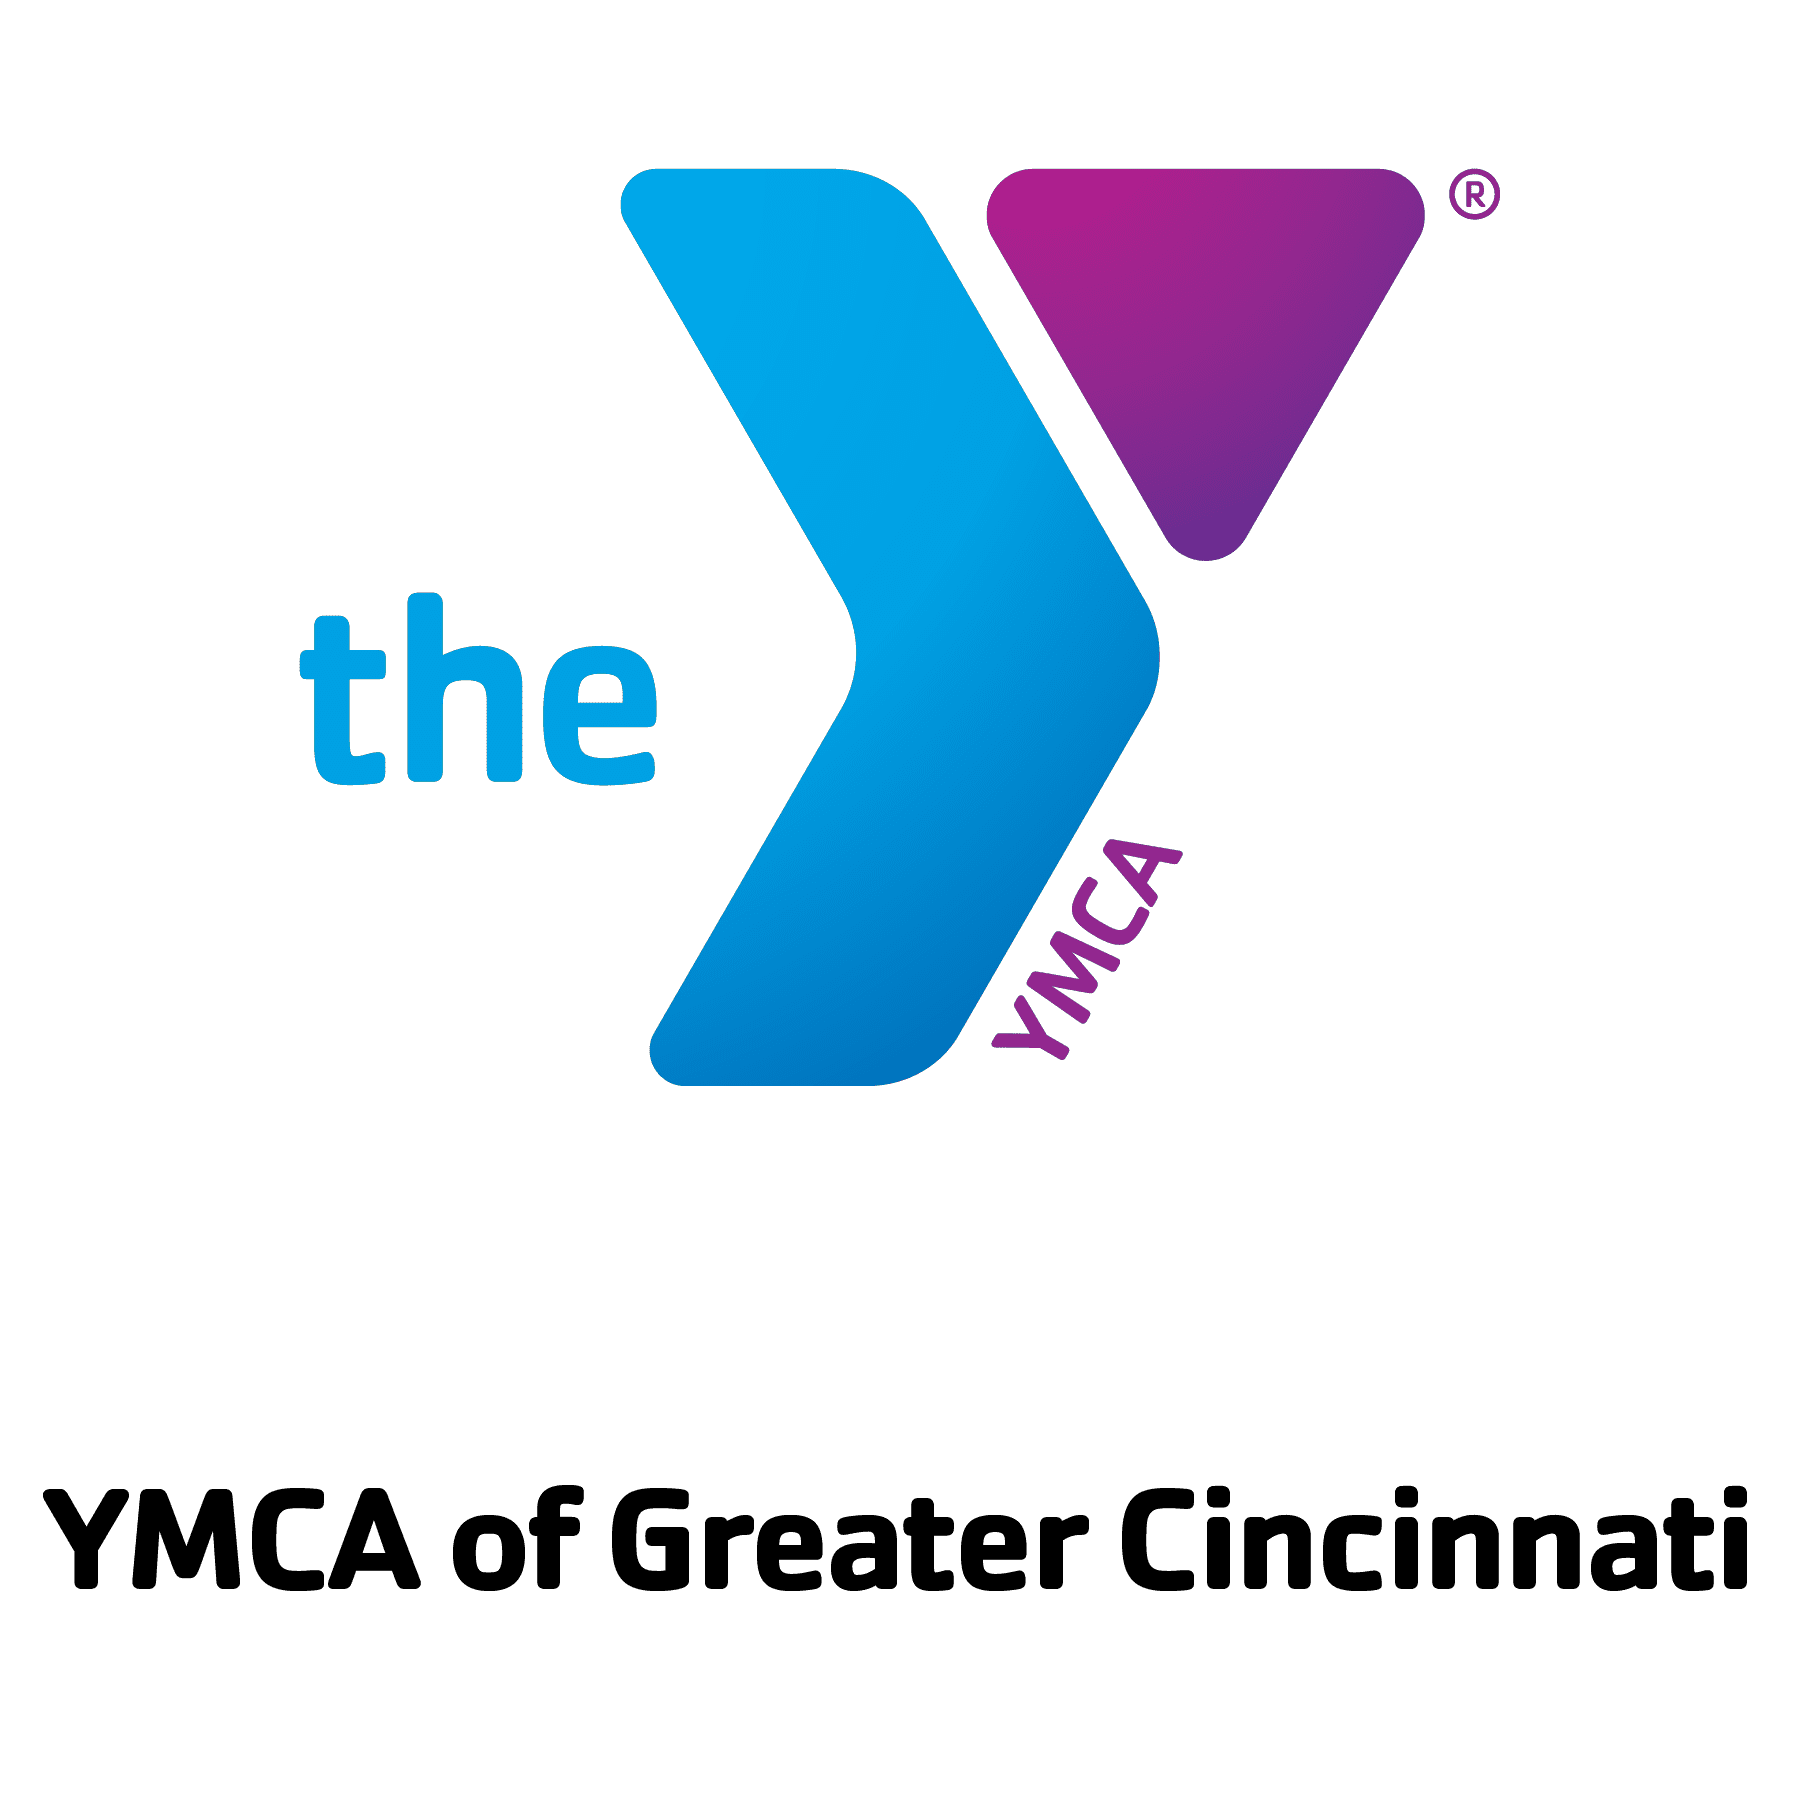 YMCA of Greater Cincinnati 01